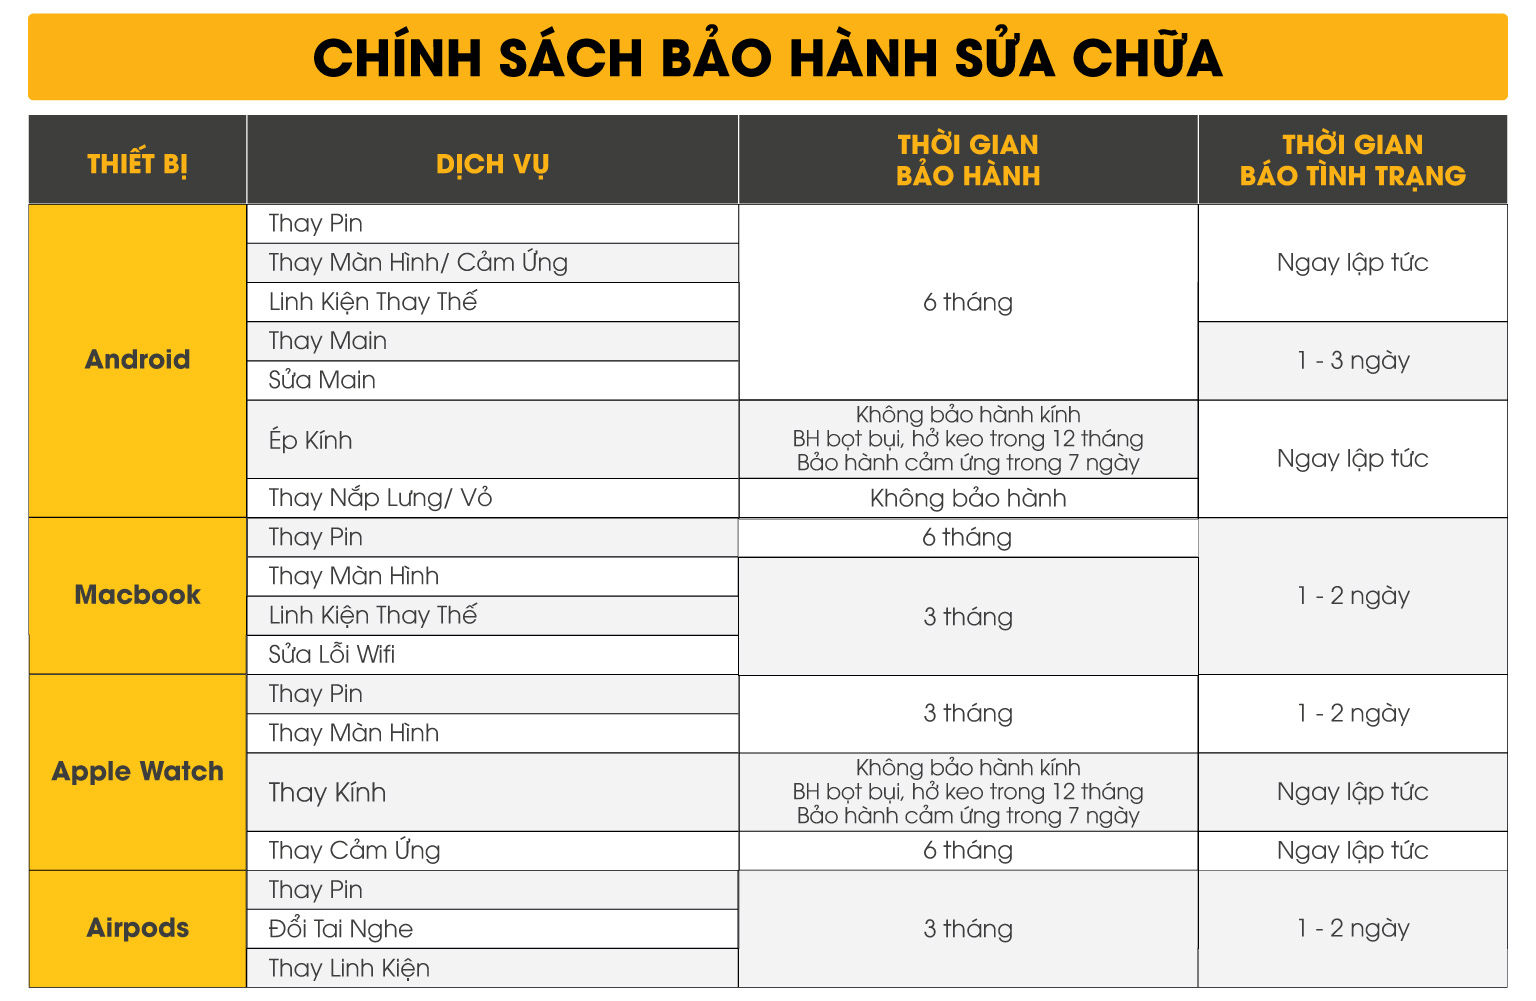 Chính sách bảo hành CHINH SACH BAO HANH SUA CHUA vien update